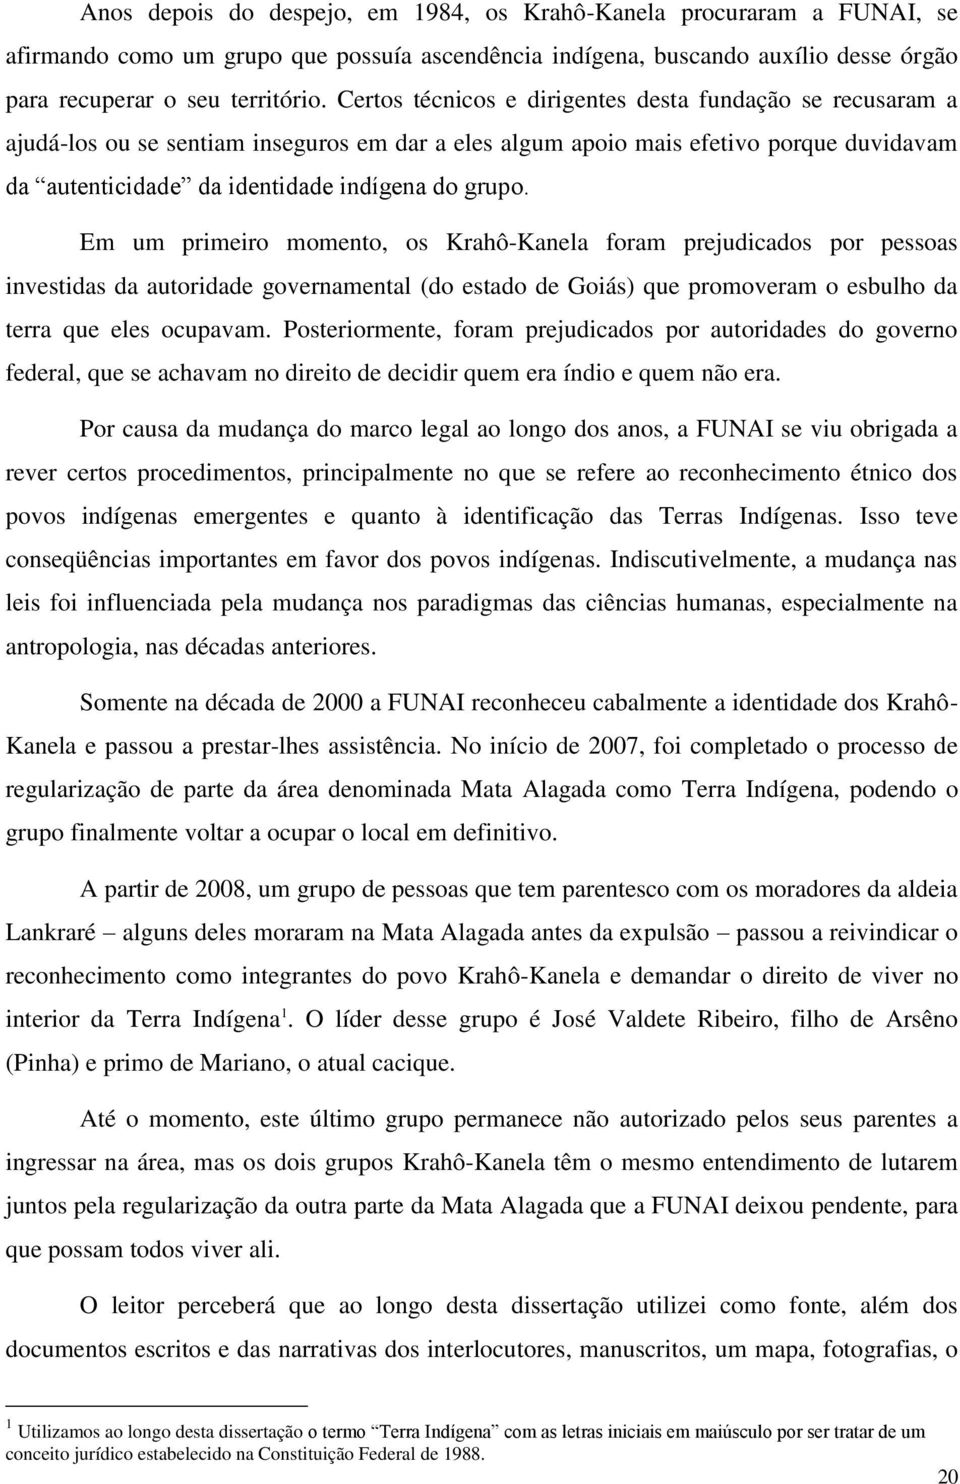 Em um primeiro momento, os Krahô-Kanela foram prejudicados por pessoas investidas da autoridade governamental (do estado de Goiás) que promoveram o esbulho da terra que eles ocupavam.